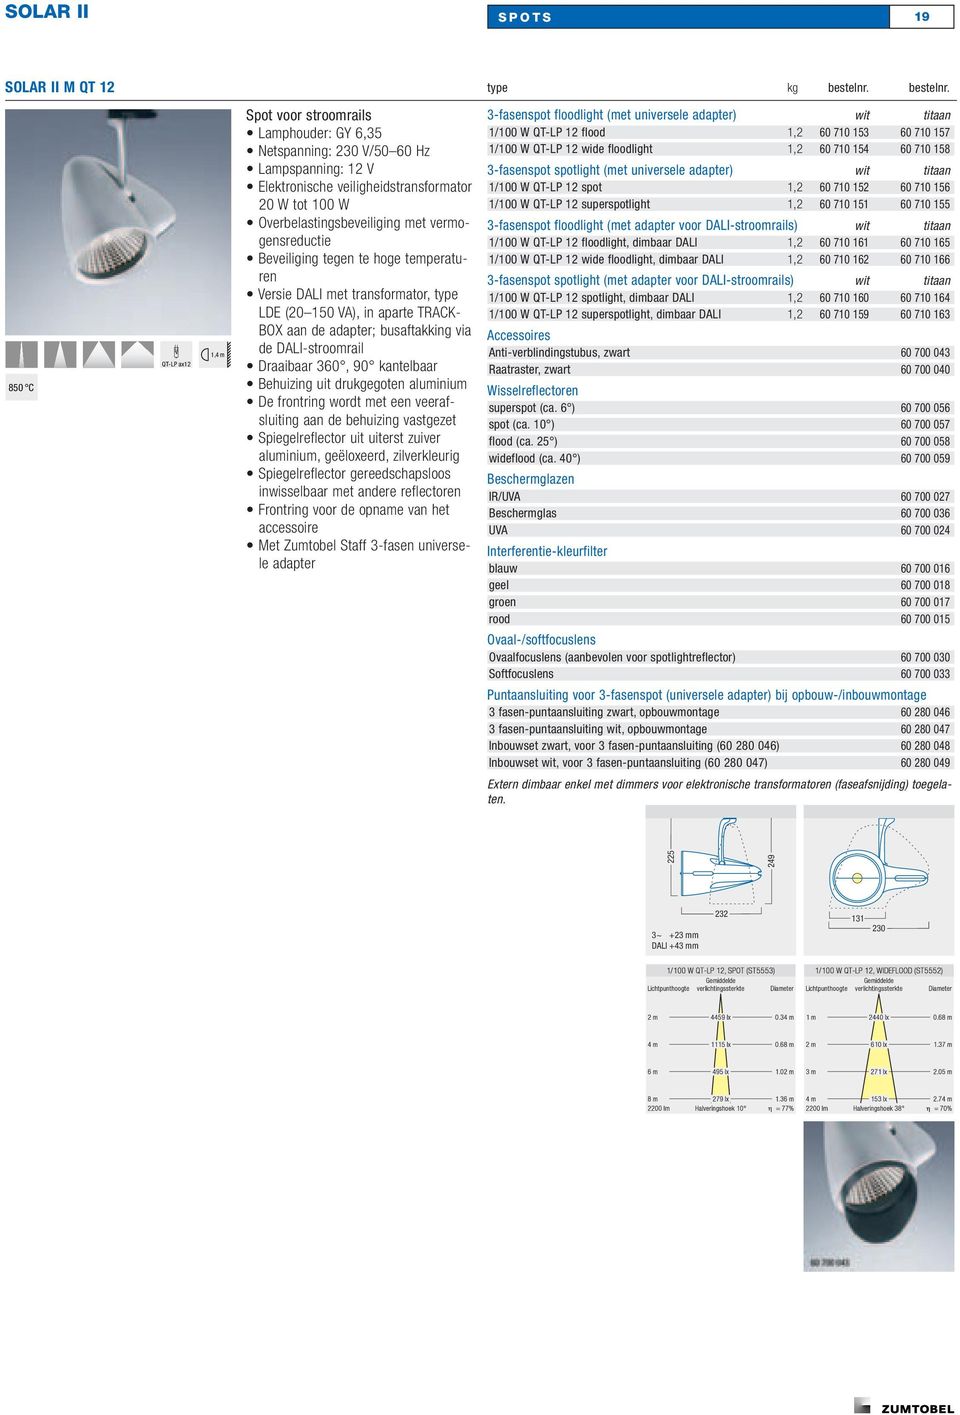 850 C QT-LP ax12 1,4 m Spot voor stroomrails Lamphouder: GY 6,35 Netspanning: 230 V/50 60 Hz Lampspanning: 12 V Elektronische veiligheidstransformator 20 W tot 100 W Overbelastingsbeveiliging met